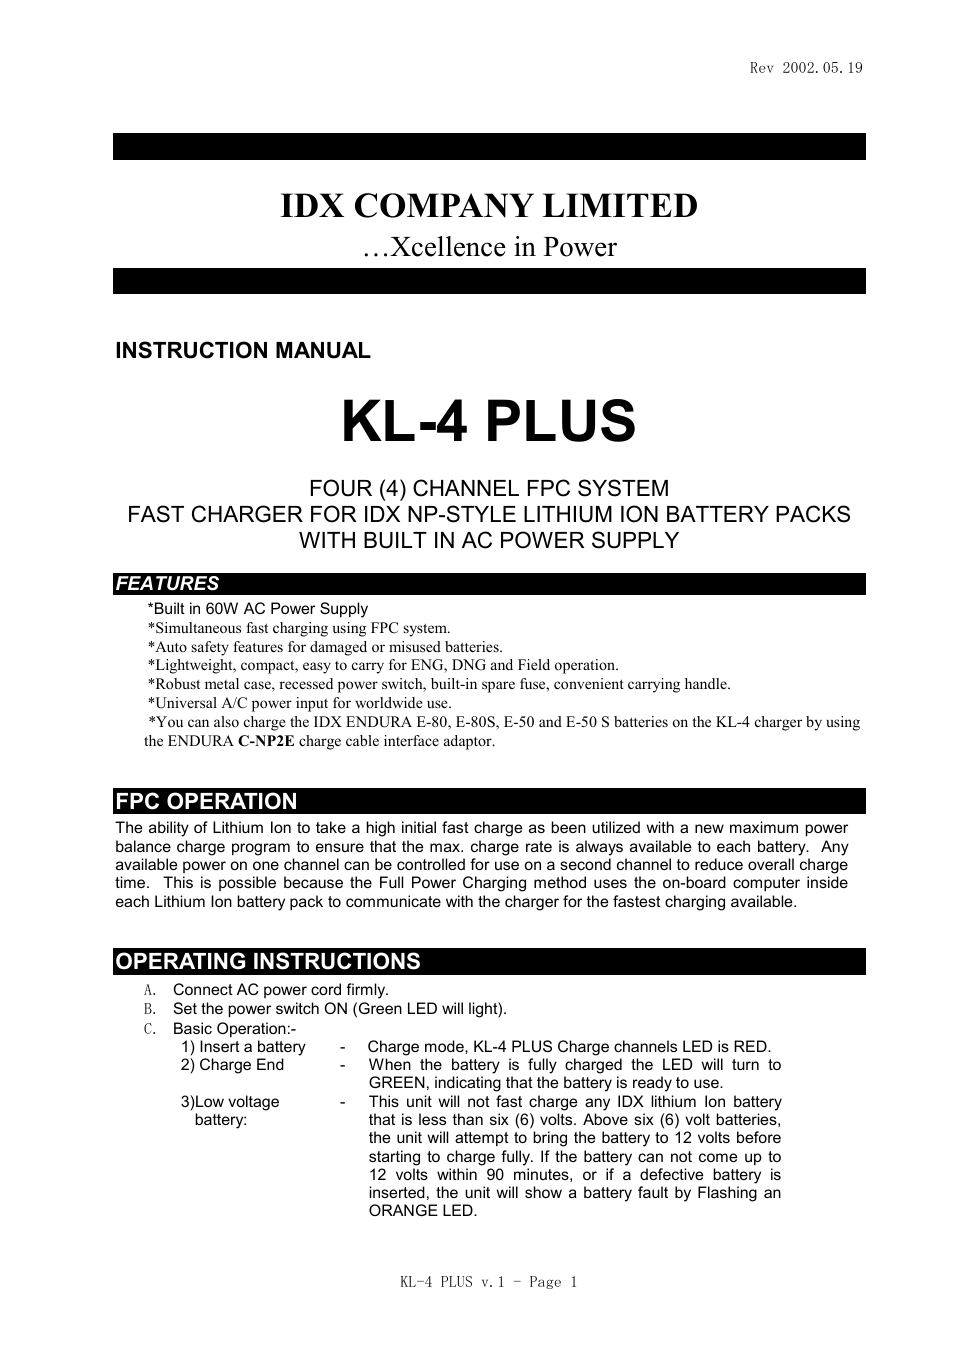 KL-4 PLUS